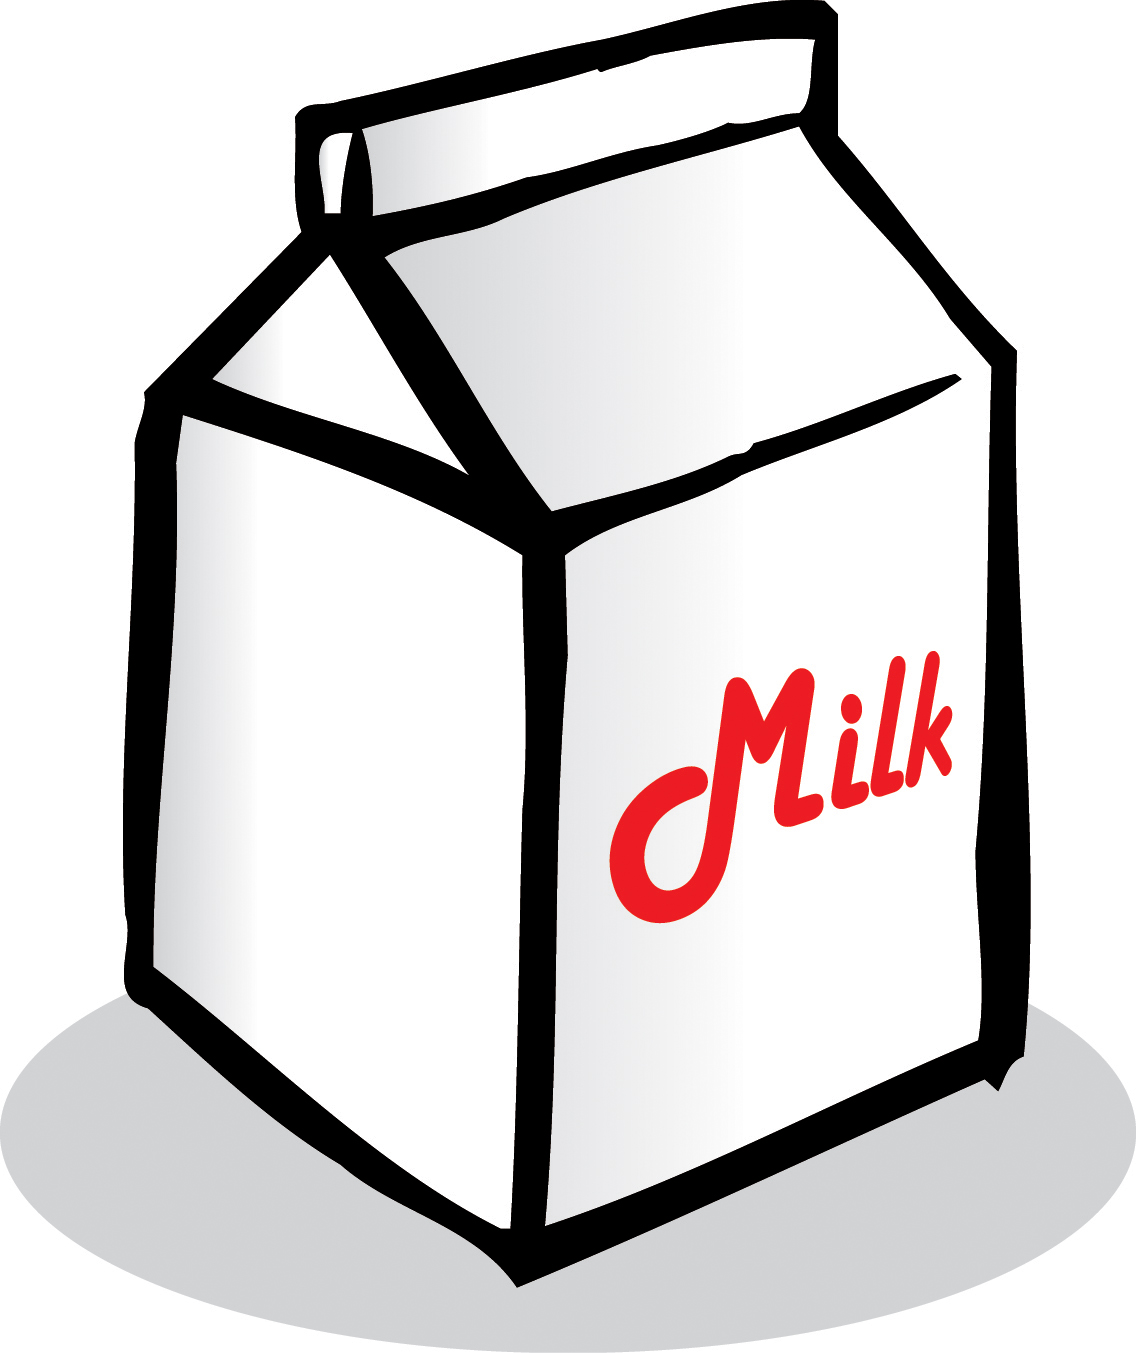 milk carton clipart black and white